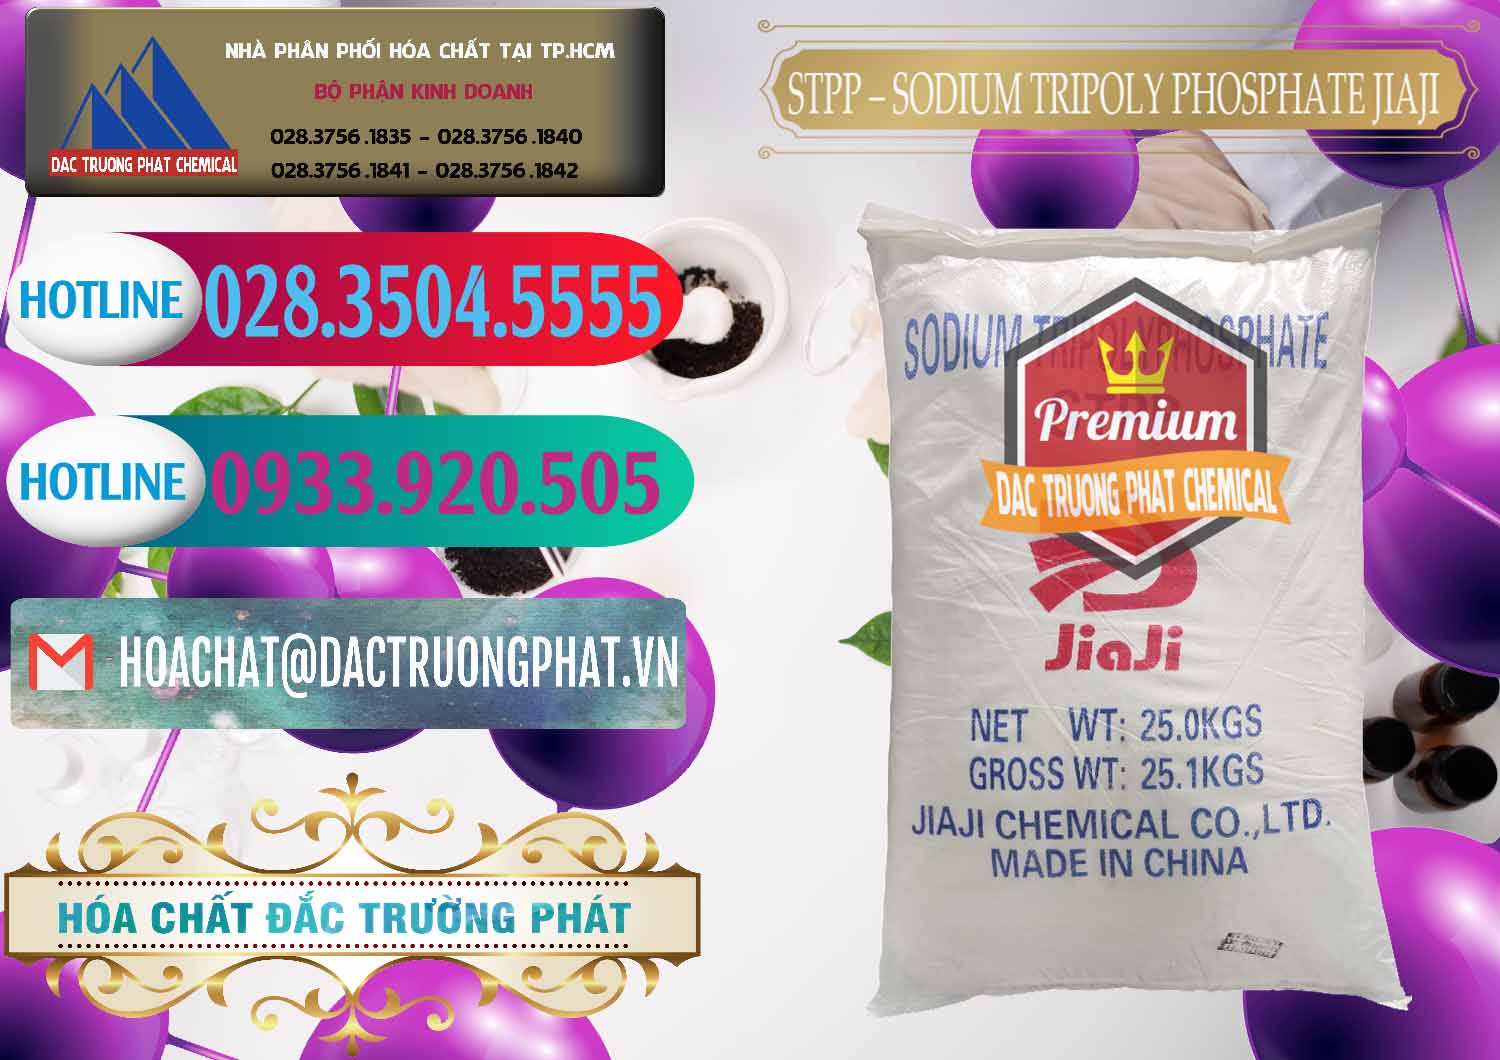 Cty chuyên kinh doanh và bán Sodium Tripoly Phosphate - STPP Jiaji Trung Quốc China - 0154 - Bán ( cung cấp ) hóa chất tại TP.HCM - truongphat.vn